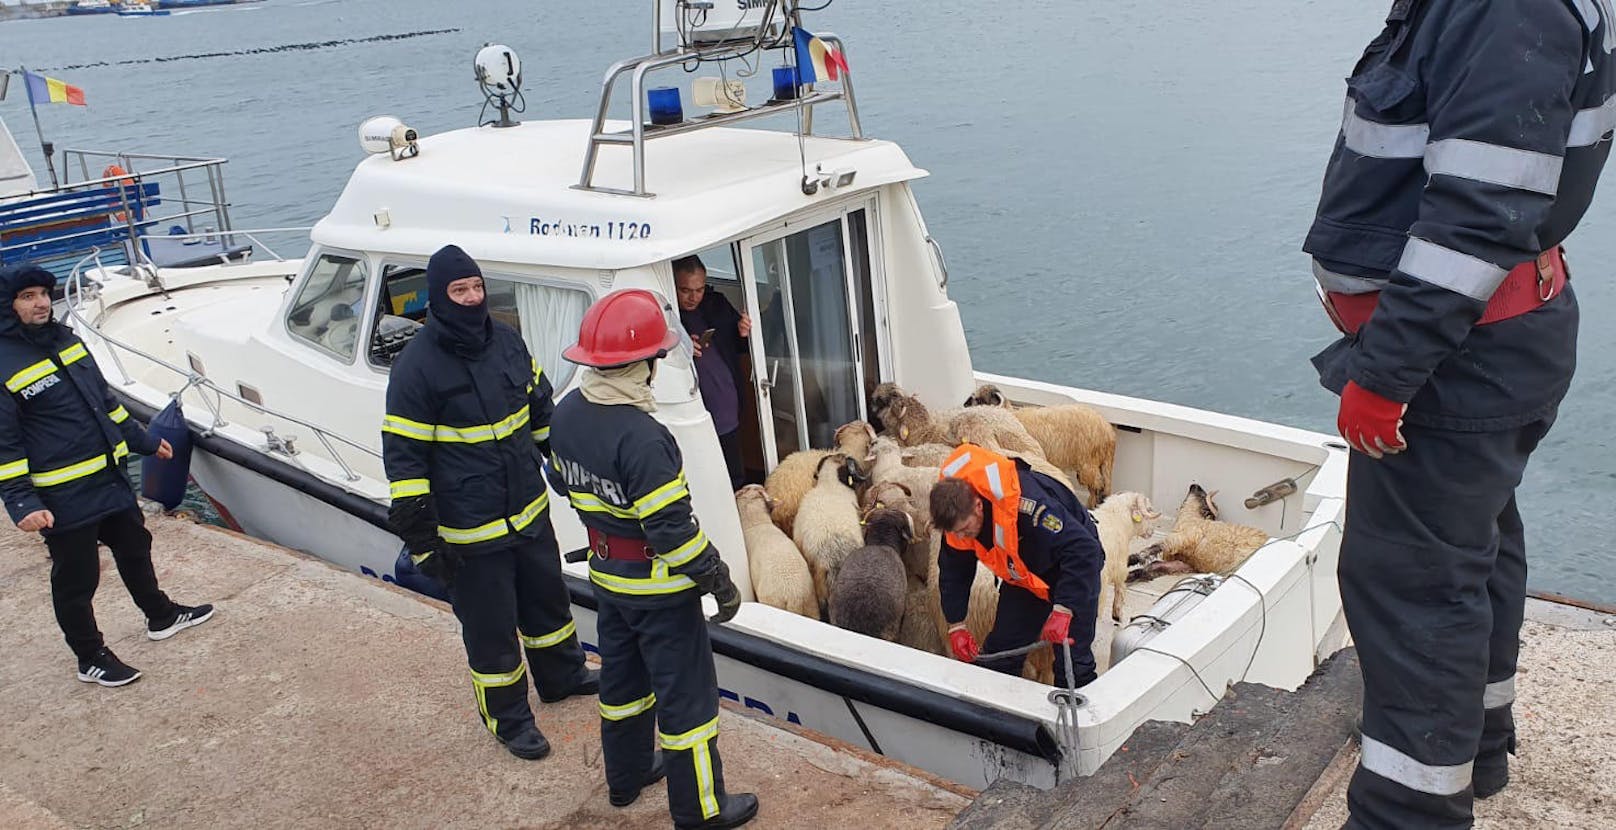 Einige Schafe schwammen im Meer und wurden gerettet.